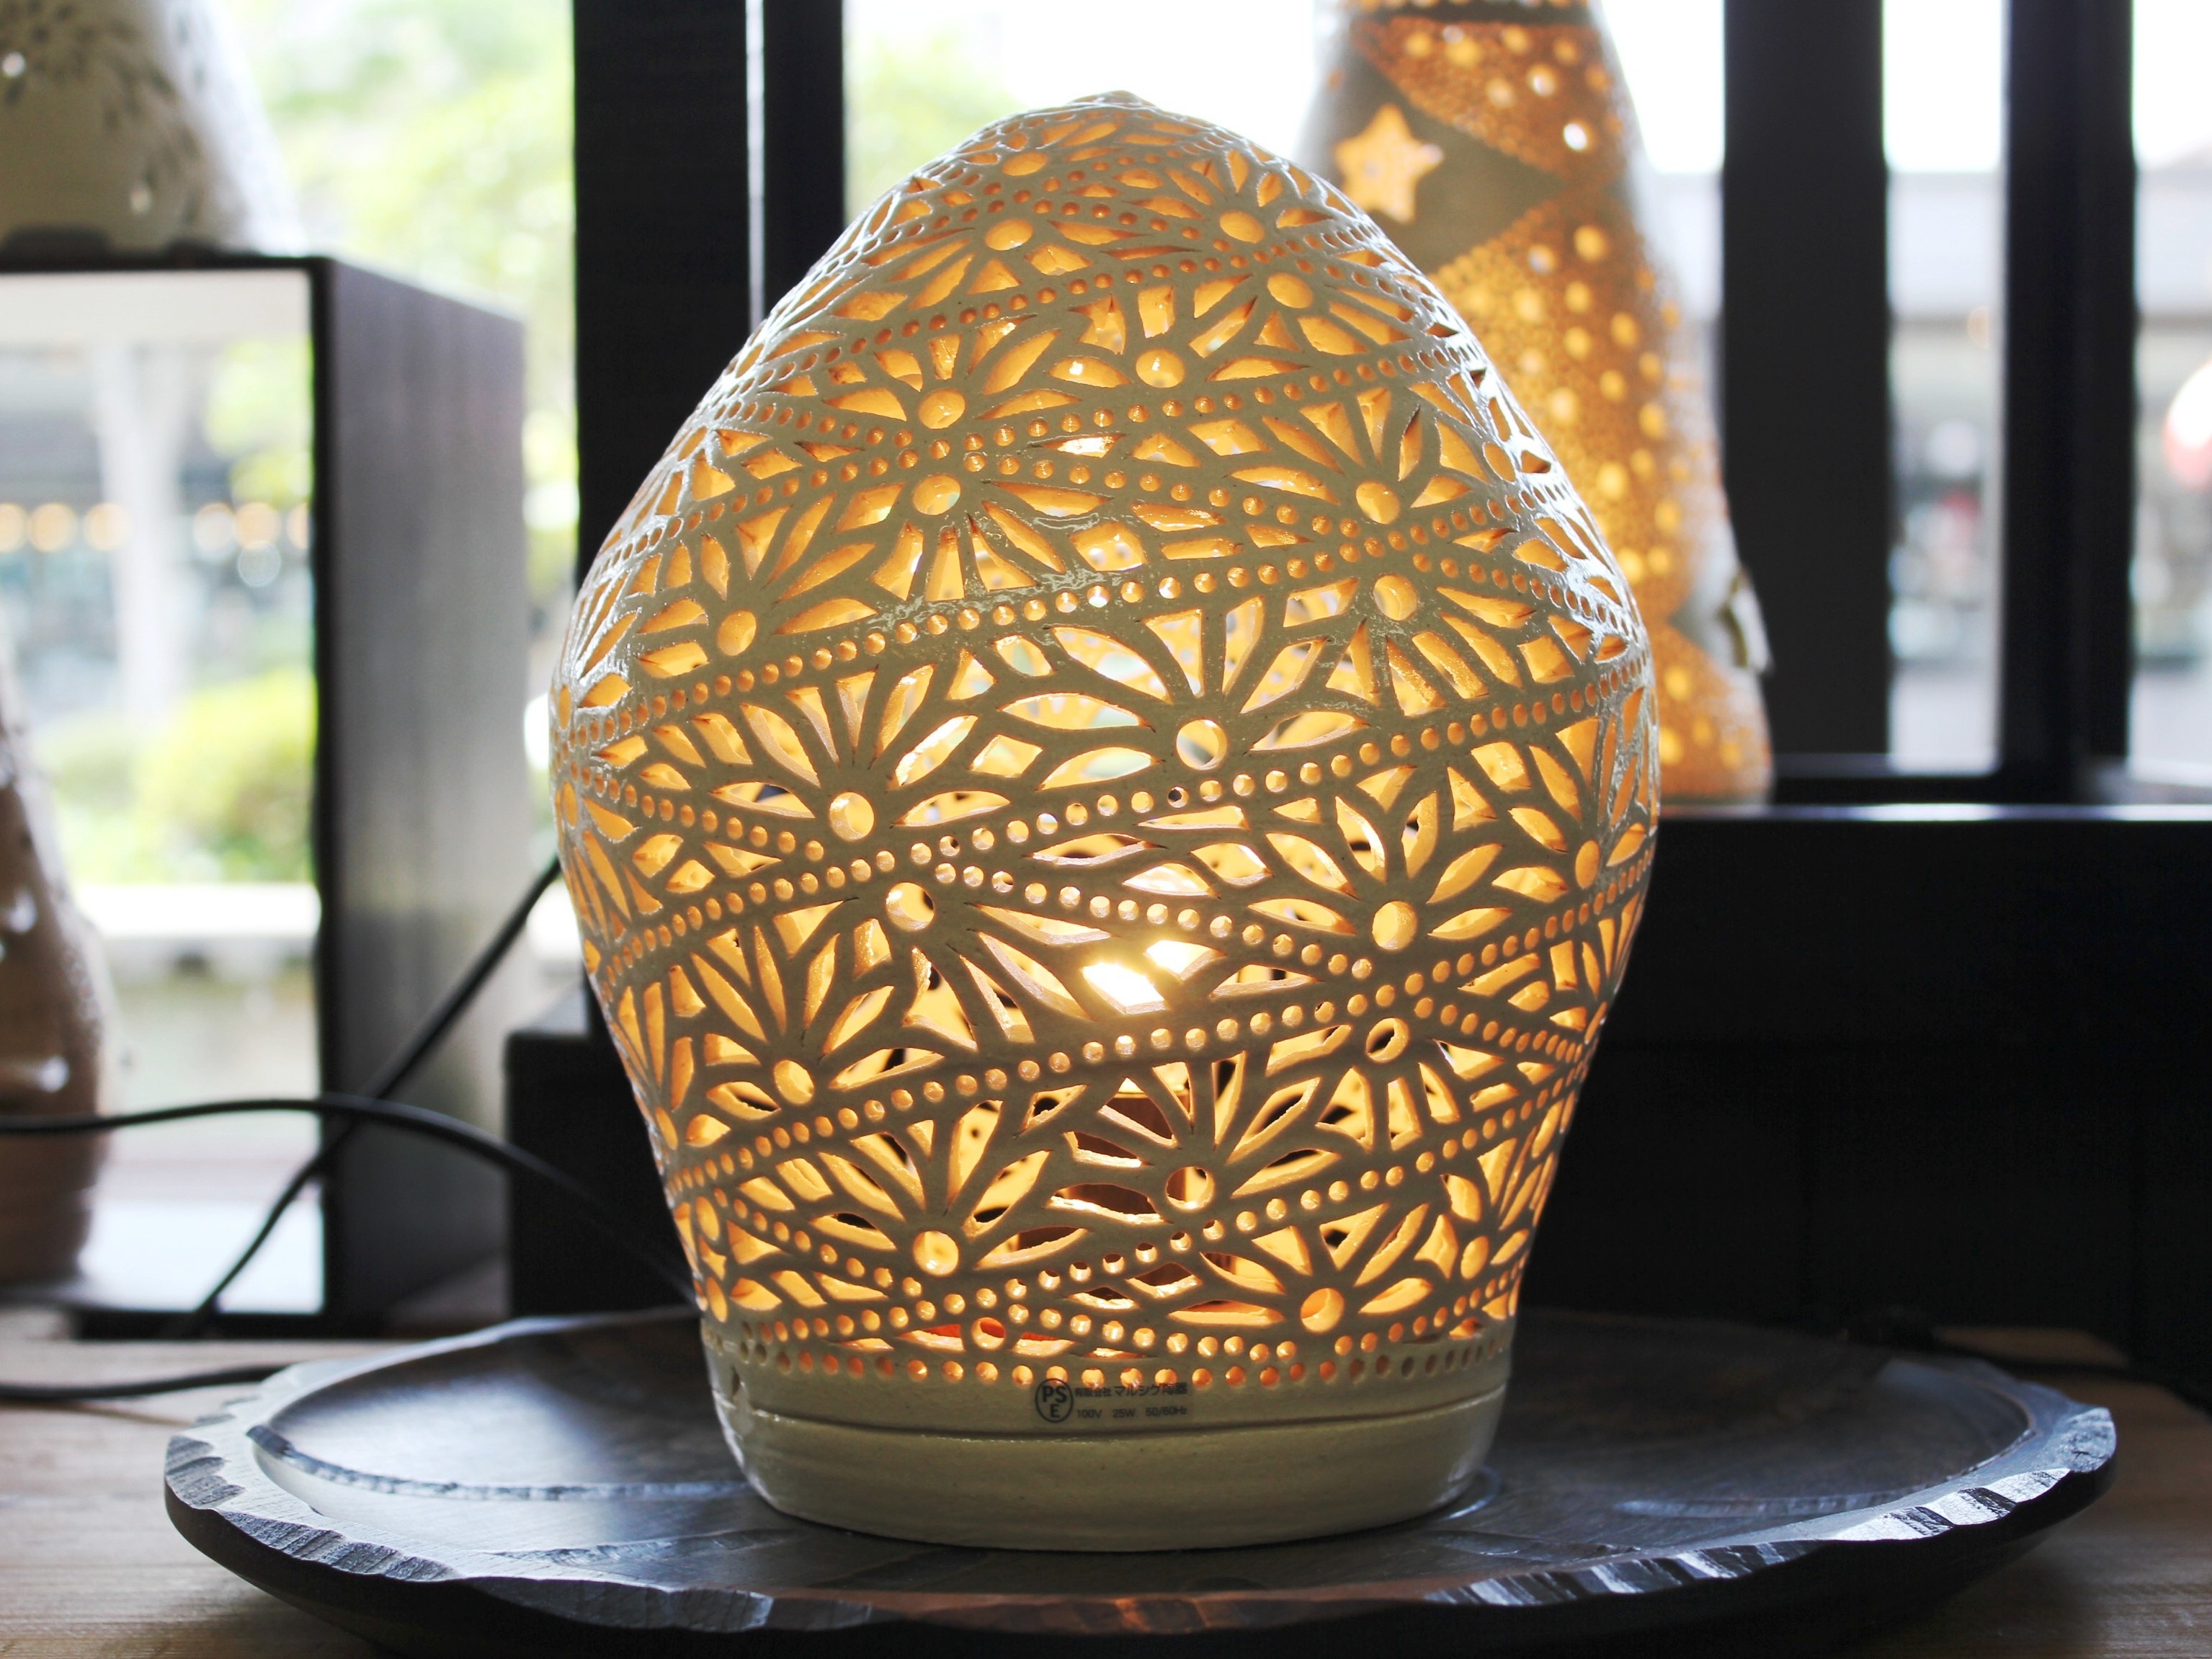 『縹乃舎』<br />1つ1つ手作業で作り出す陶磁器の透かし彫り。幻想的な光のインテリアをお楽しみ下さい。